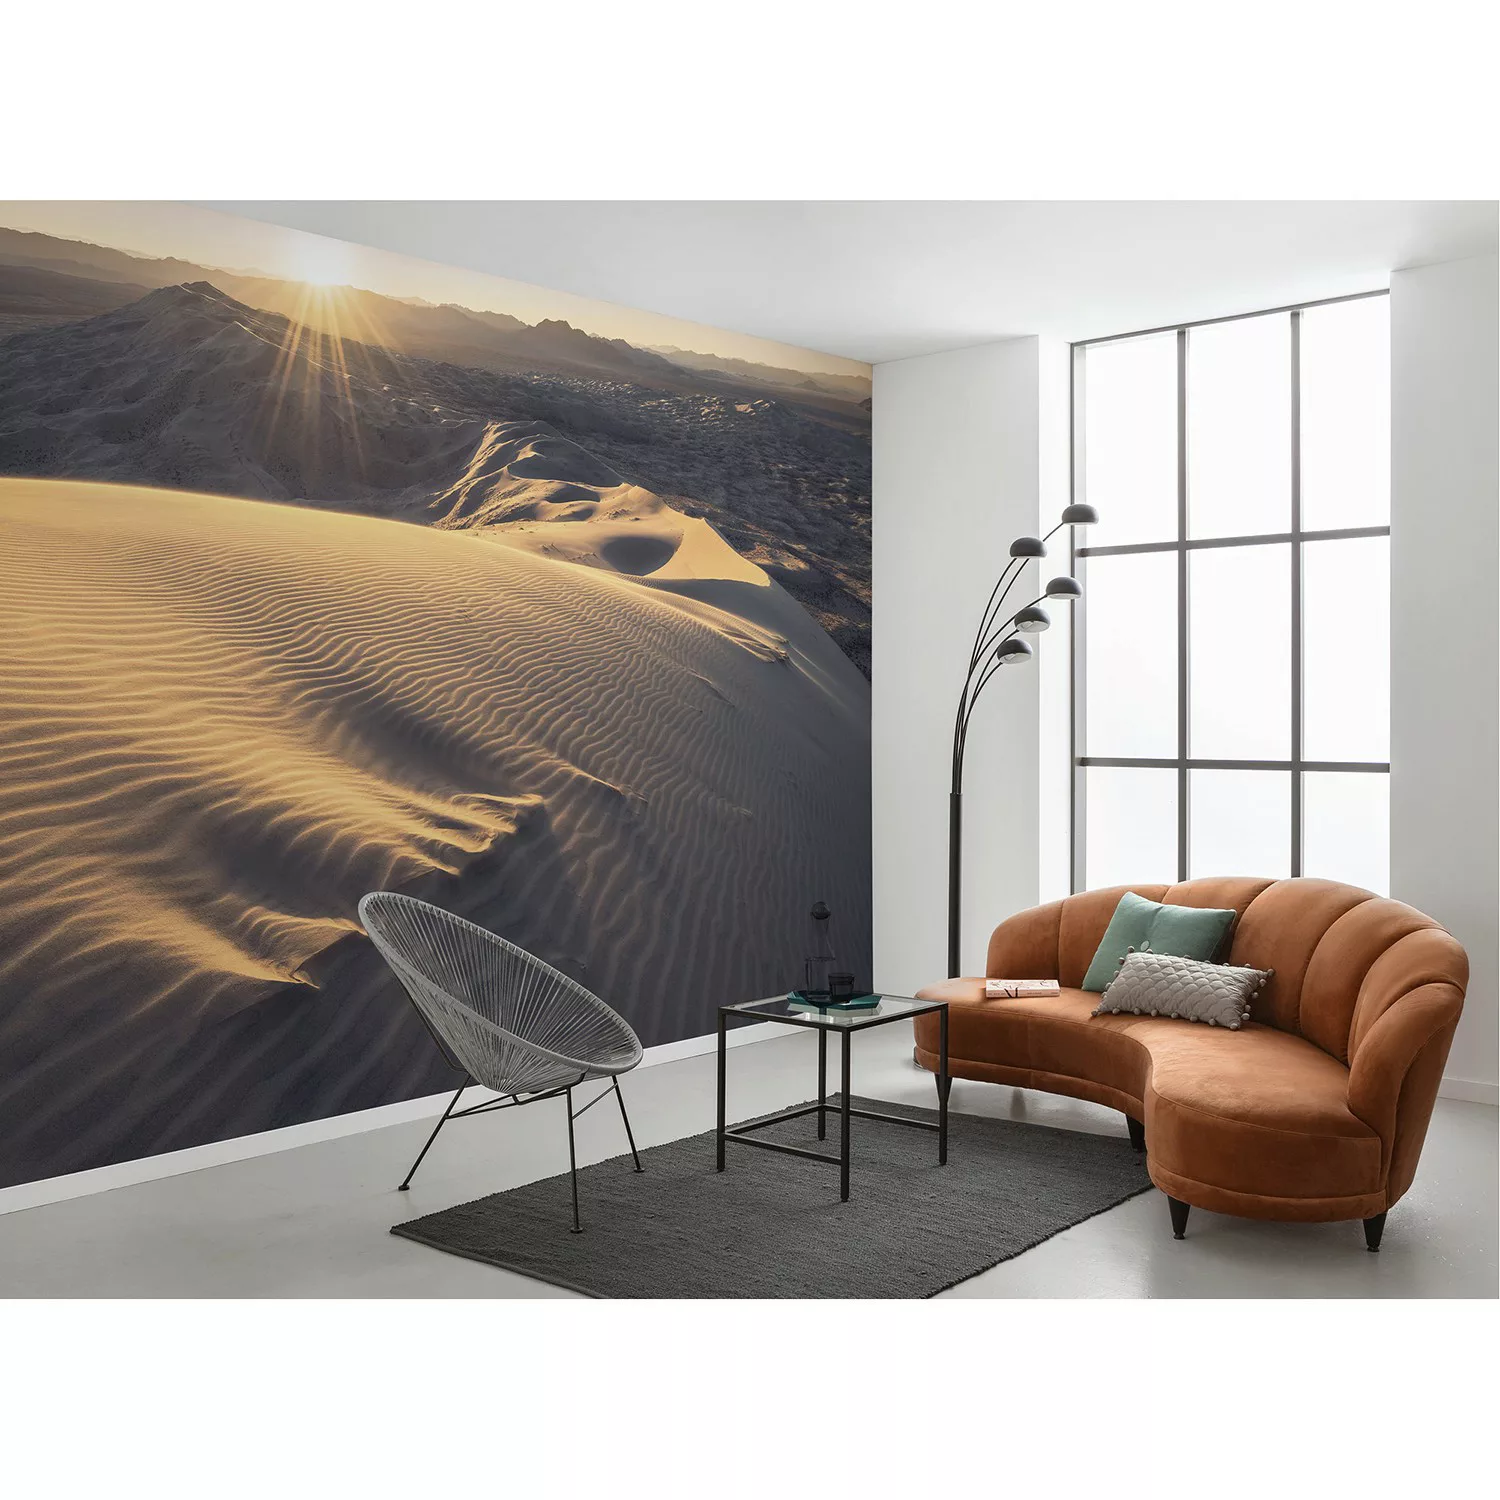 Sanders & Sanders Fototapete Landschaft Sandbraun 450 x 280 cm 612701 günstig online kaufen